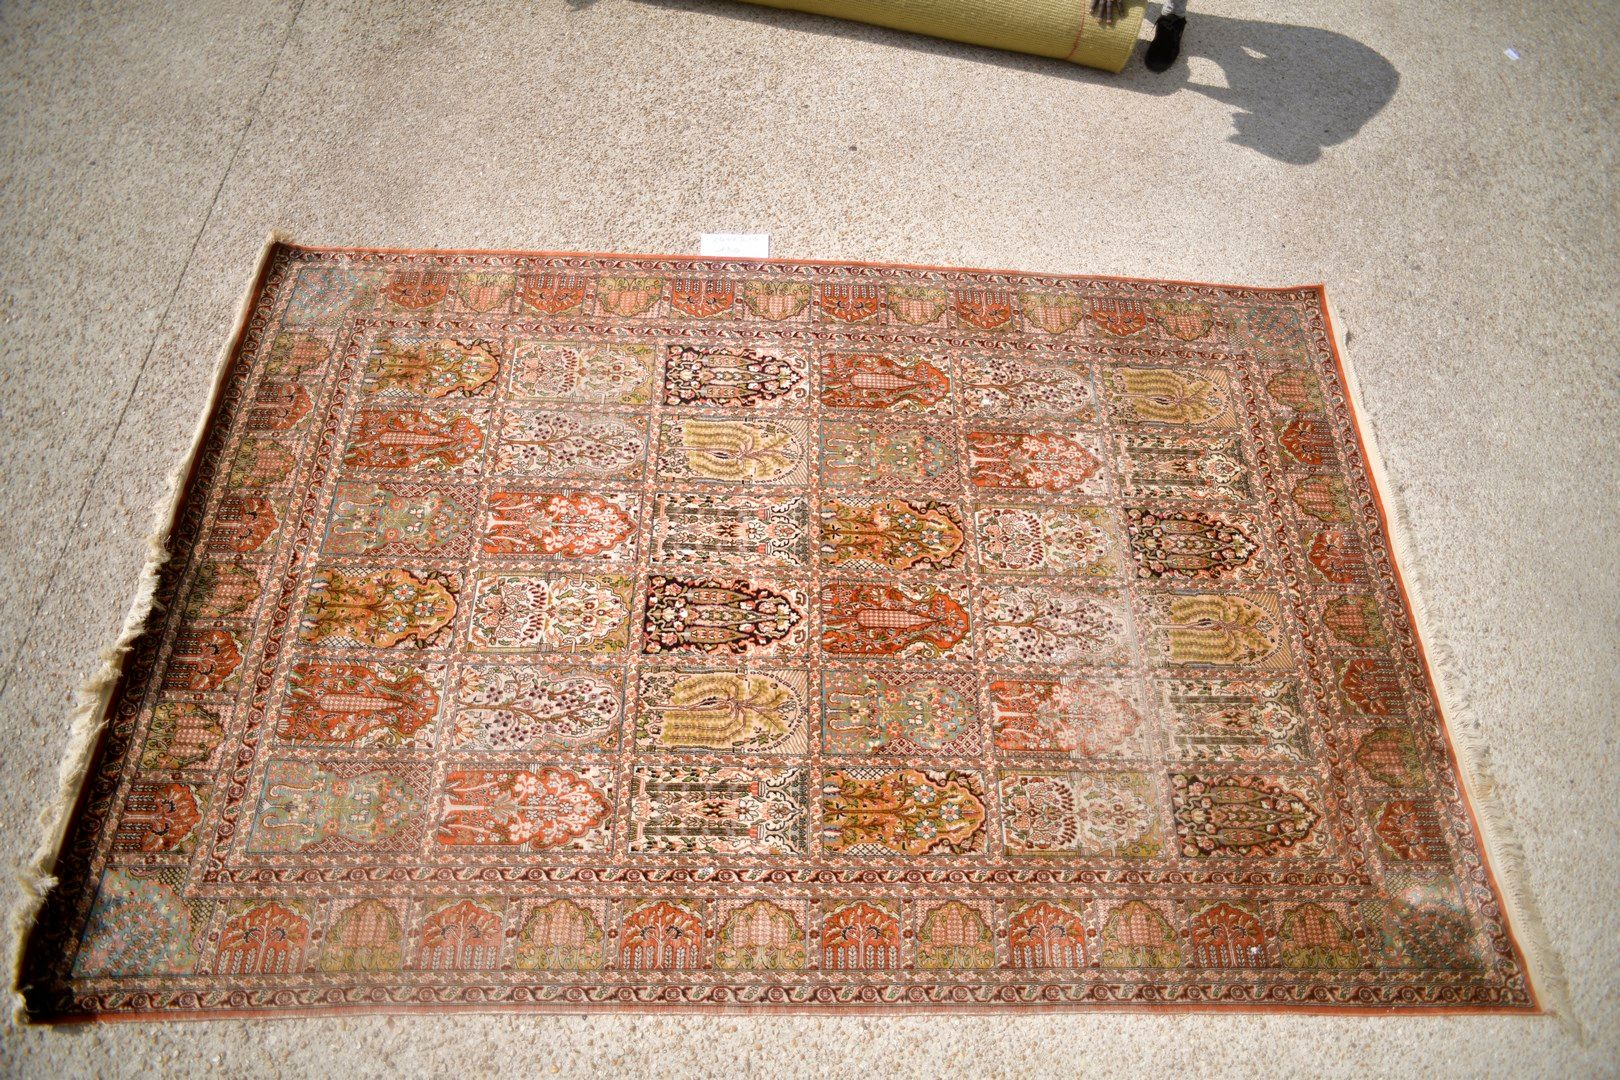 Null 印度丝羊绒，约1980年。

棉质基础上的丝绒。

花园装饰。

状况良好。

340x213厘米